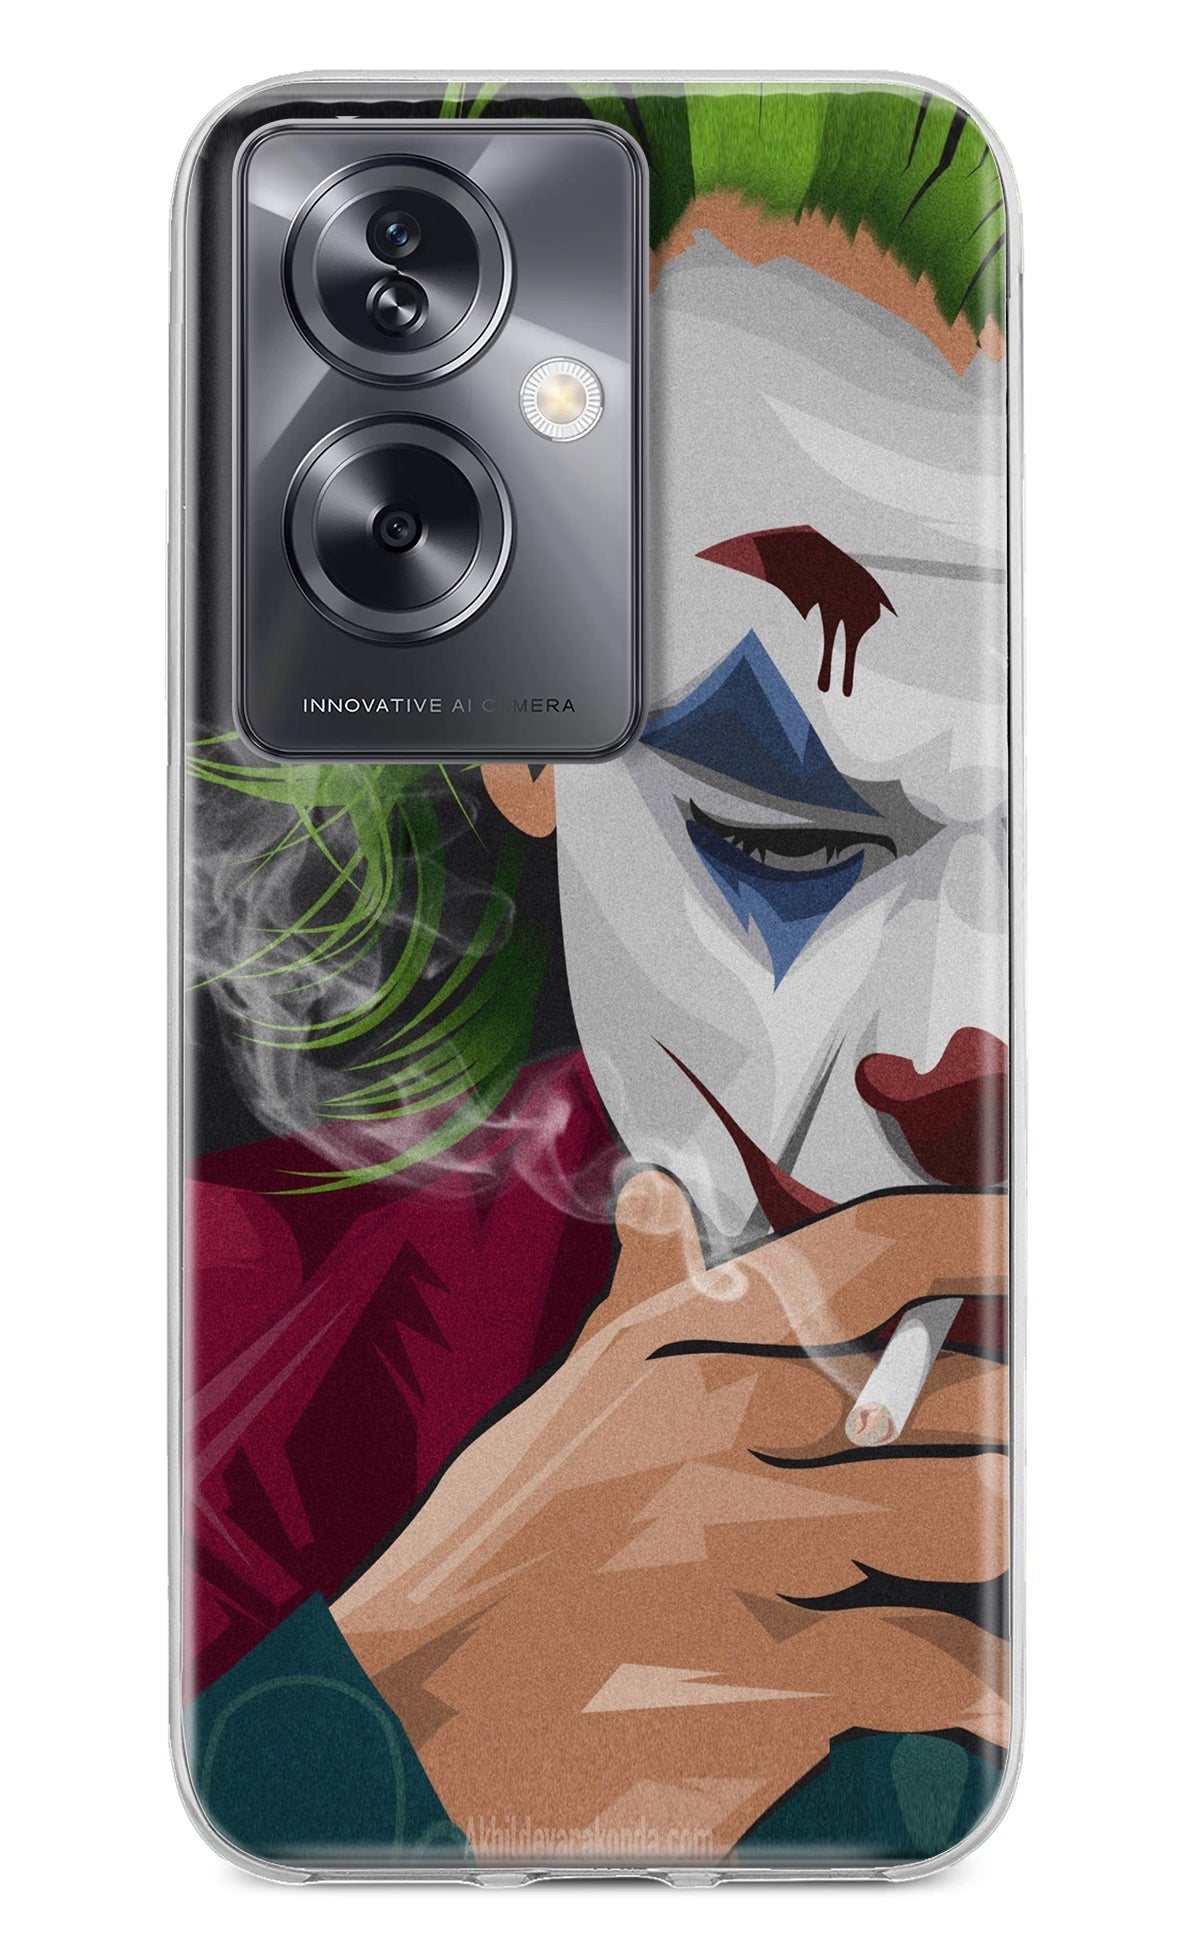 Joker Smoking Oppo A79 5G Back Cover